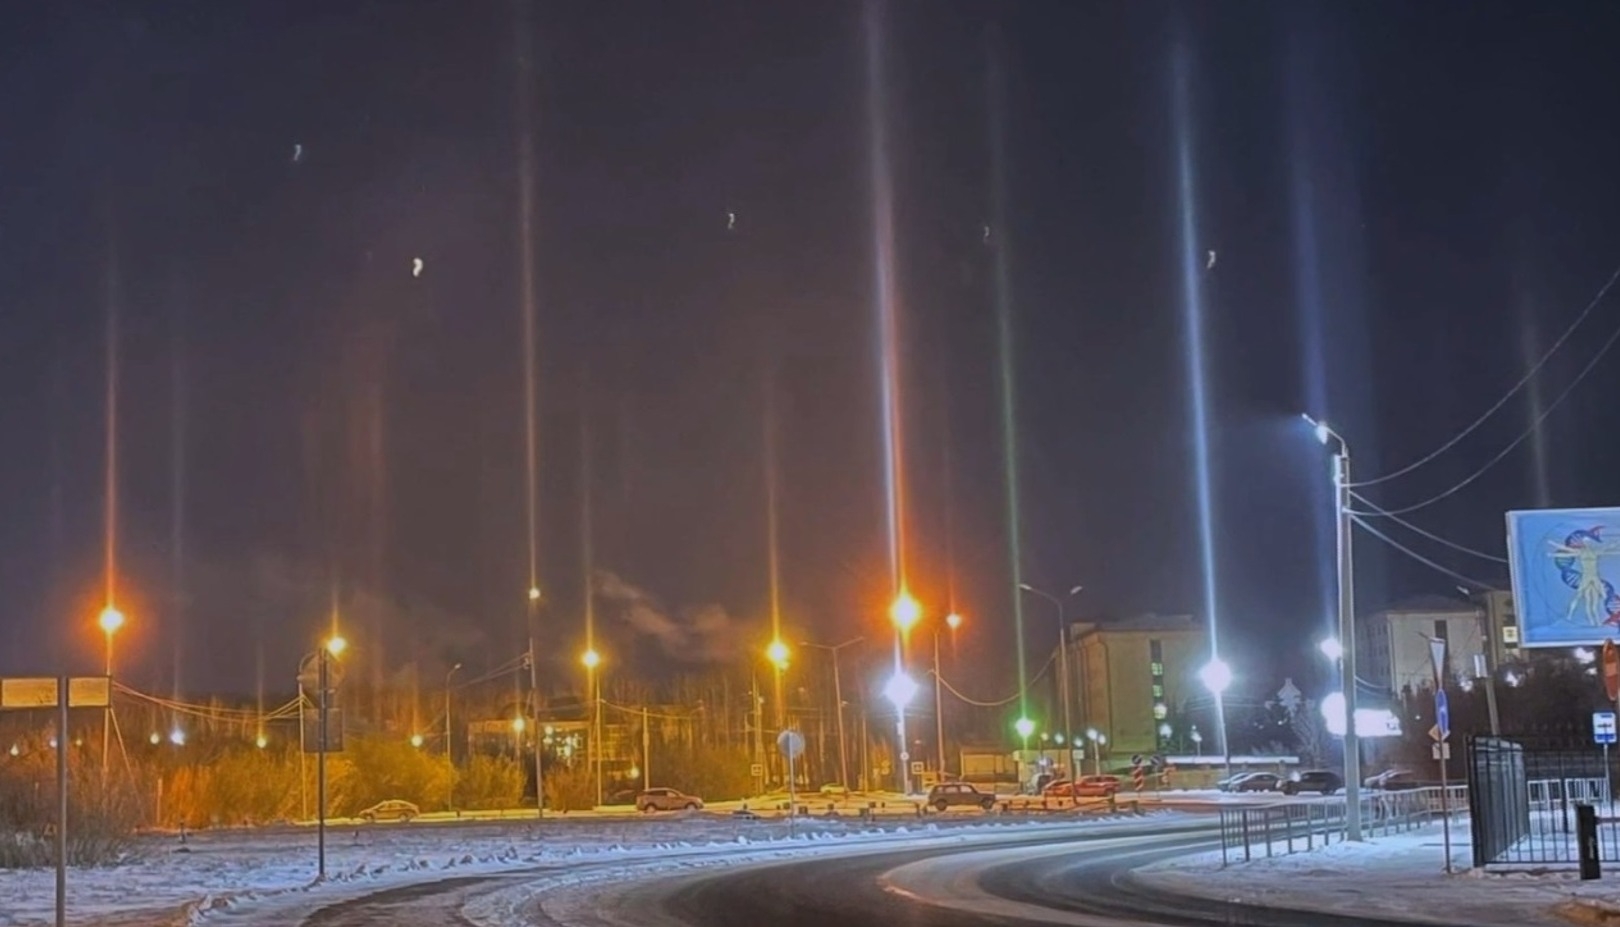 Новости регионов: световые столбы в небе над Тюменью, заготовка мяса собак в Хабаровске